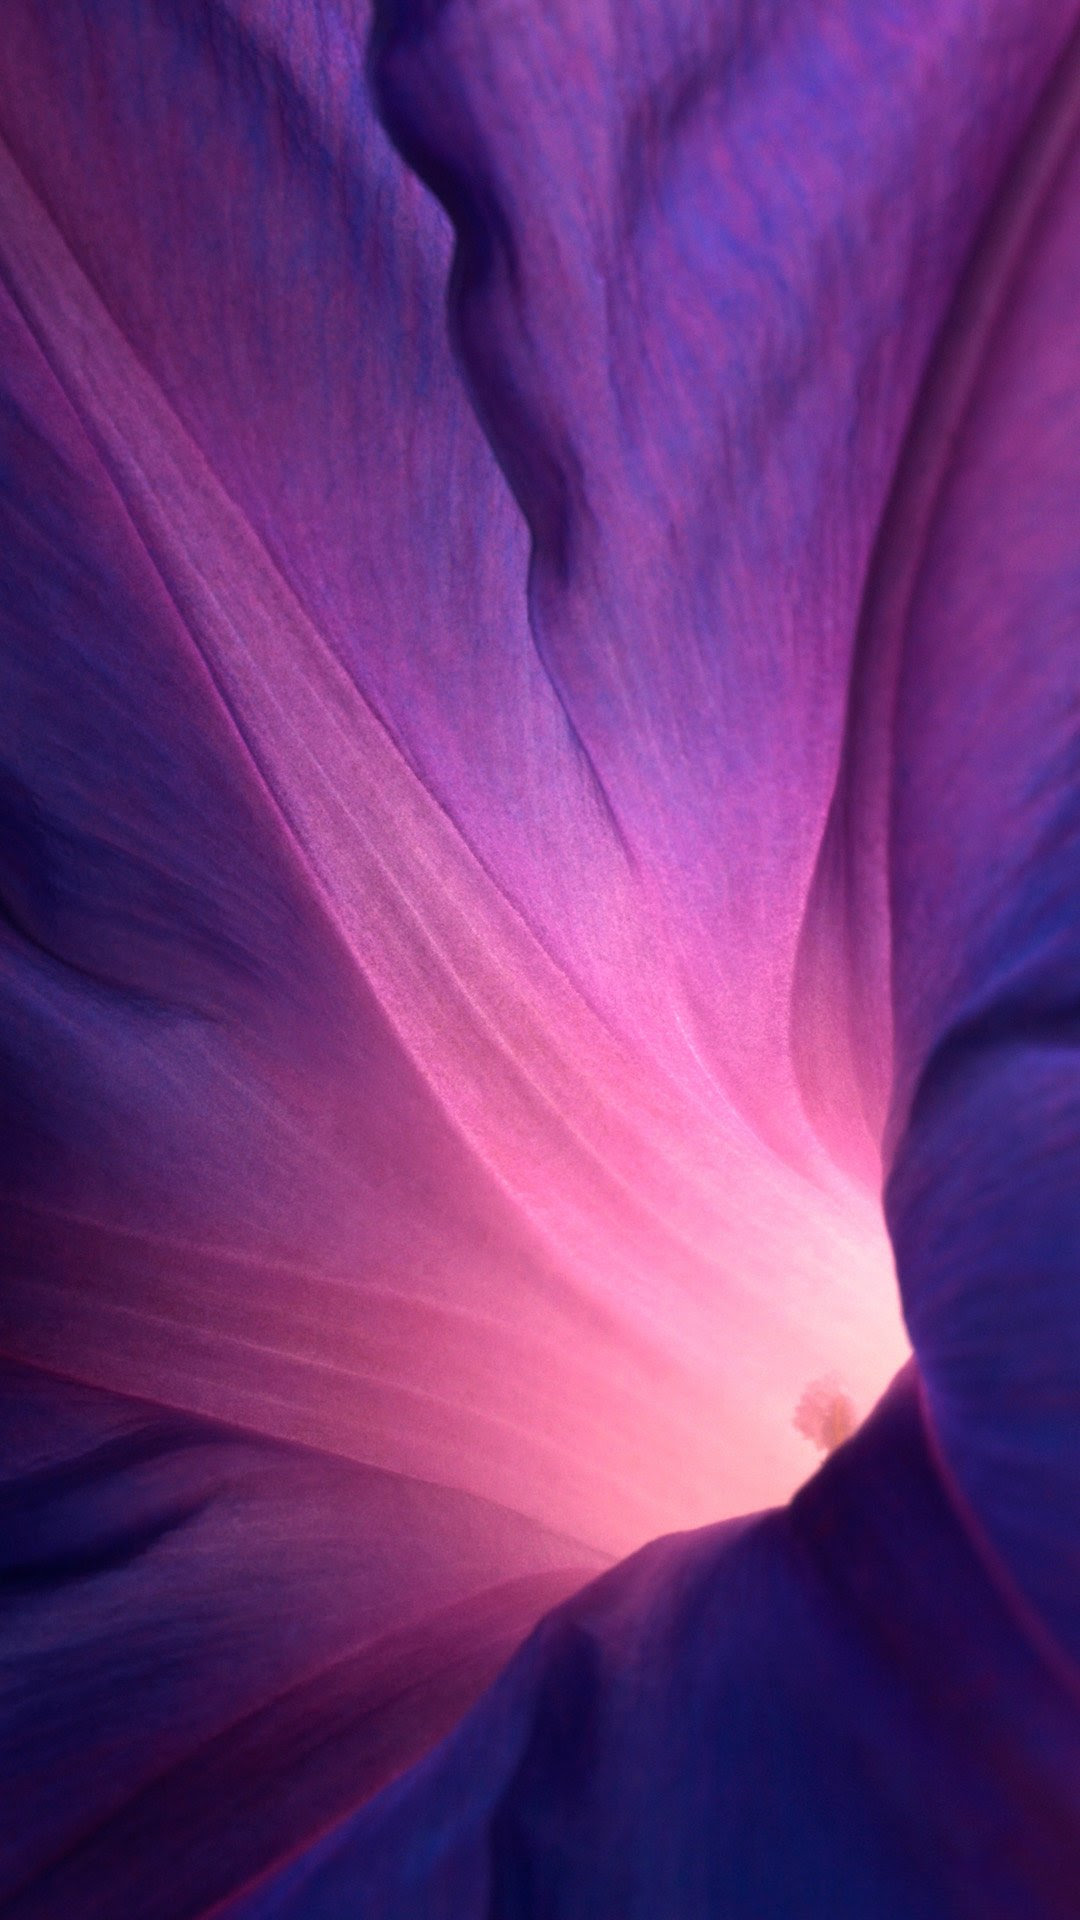 Purple Flower Wallpaper for iPhone - WallpaperSafari